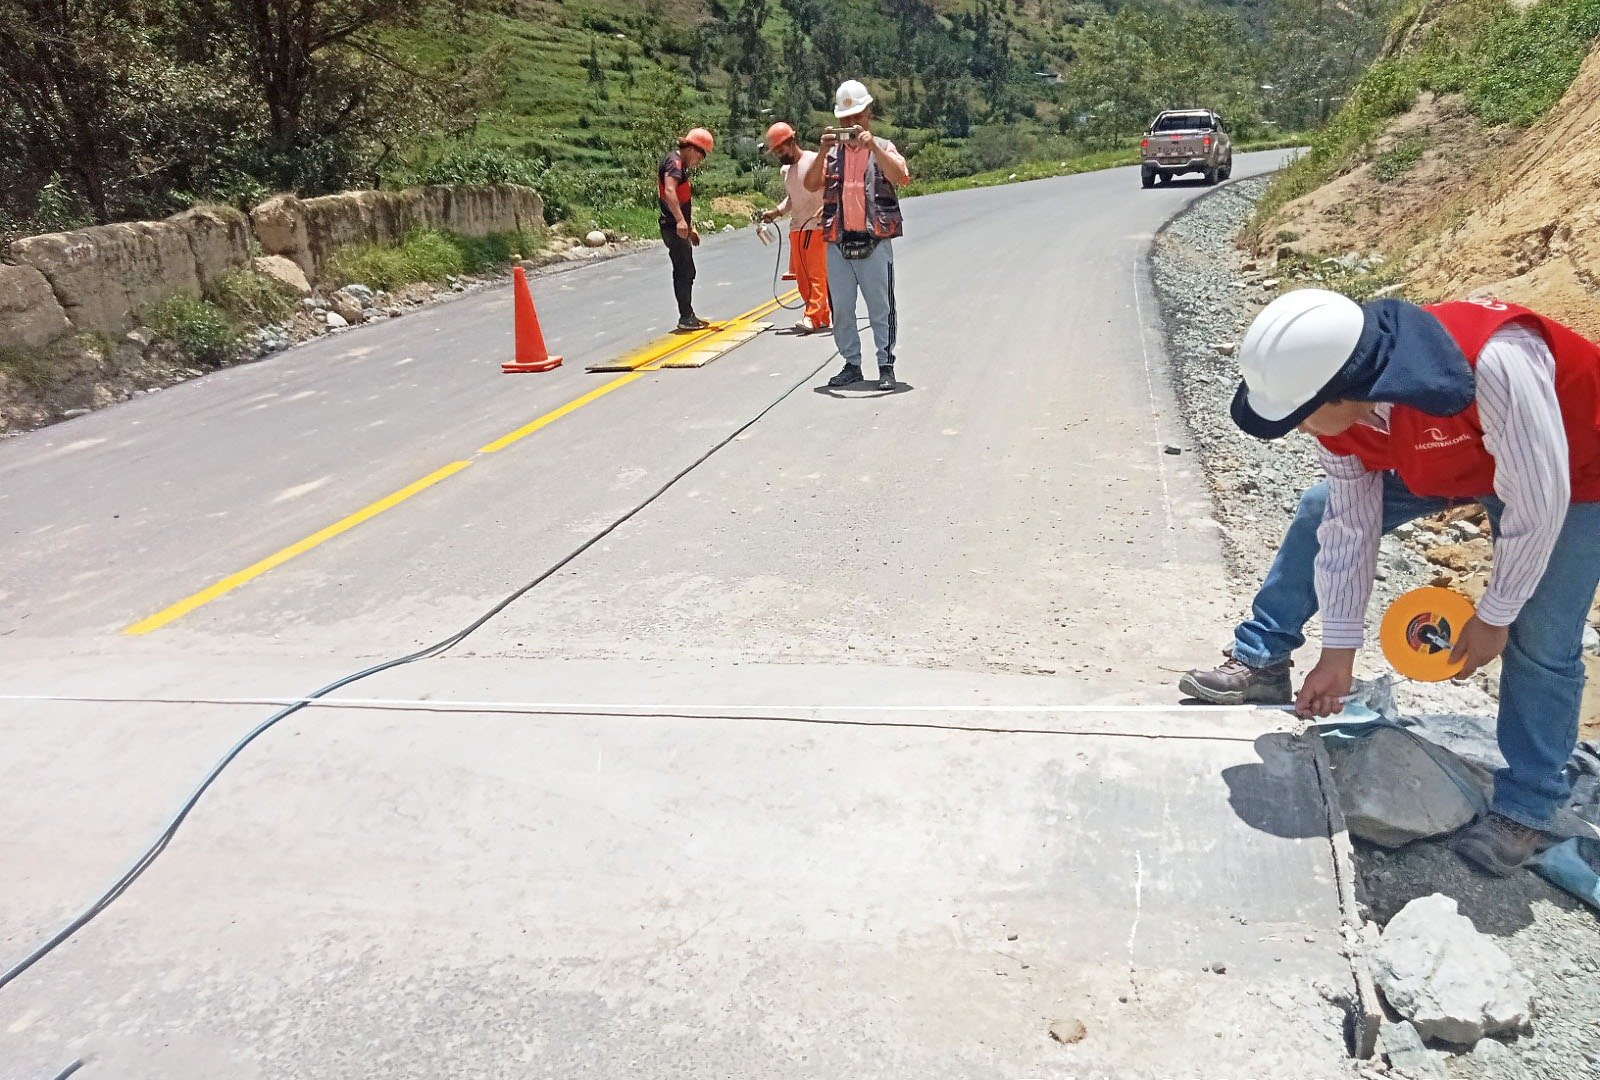 Carretera de S/4.1 millones en Molino tiene deficiencias, pero ya pagaron 100% a la constructora